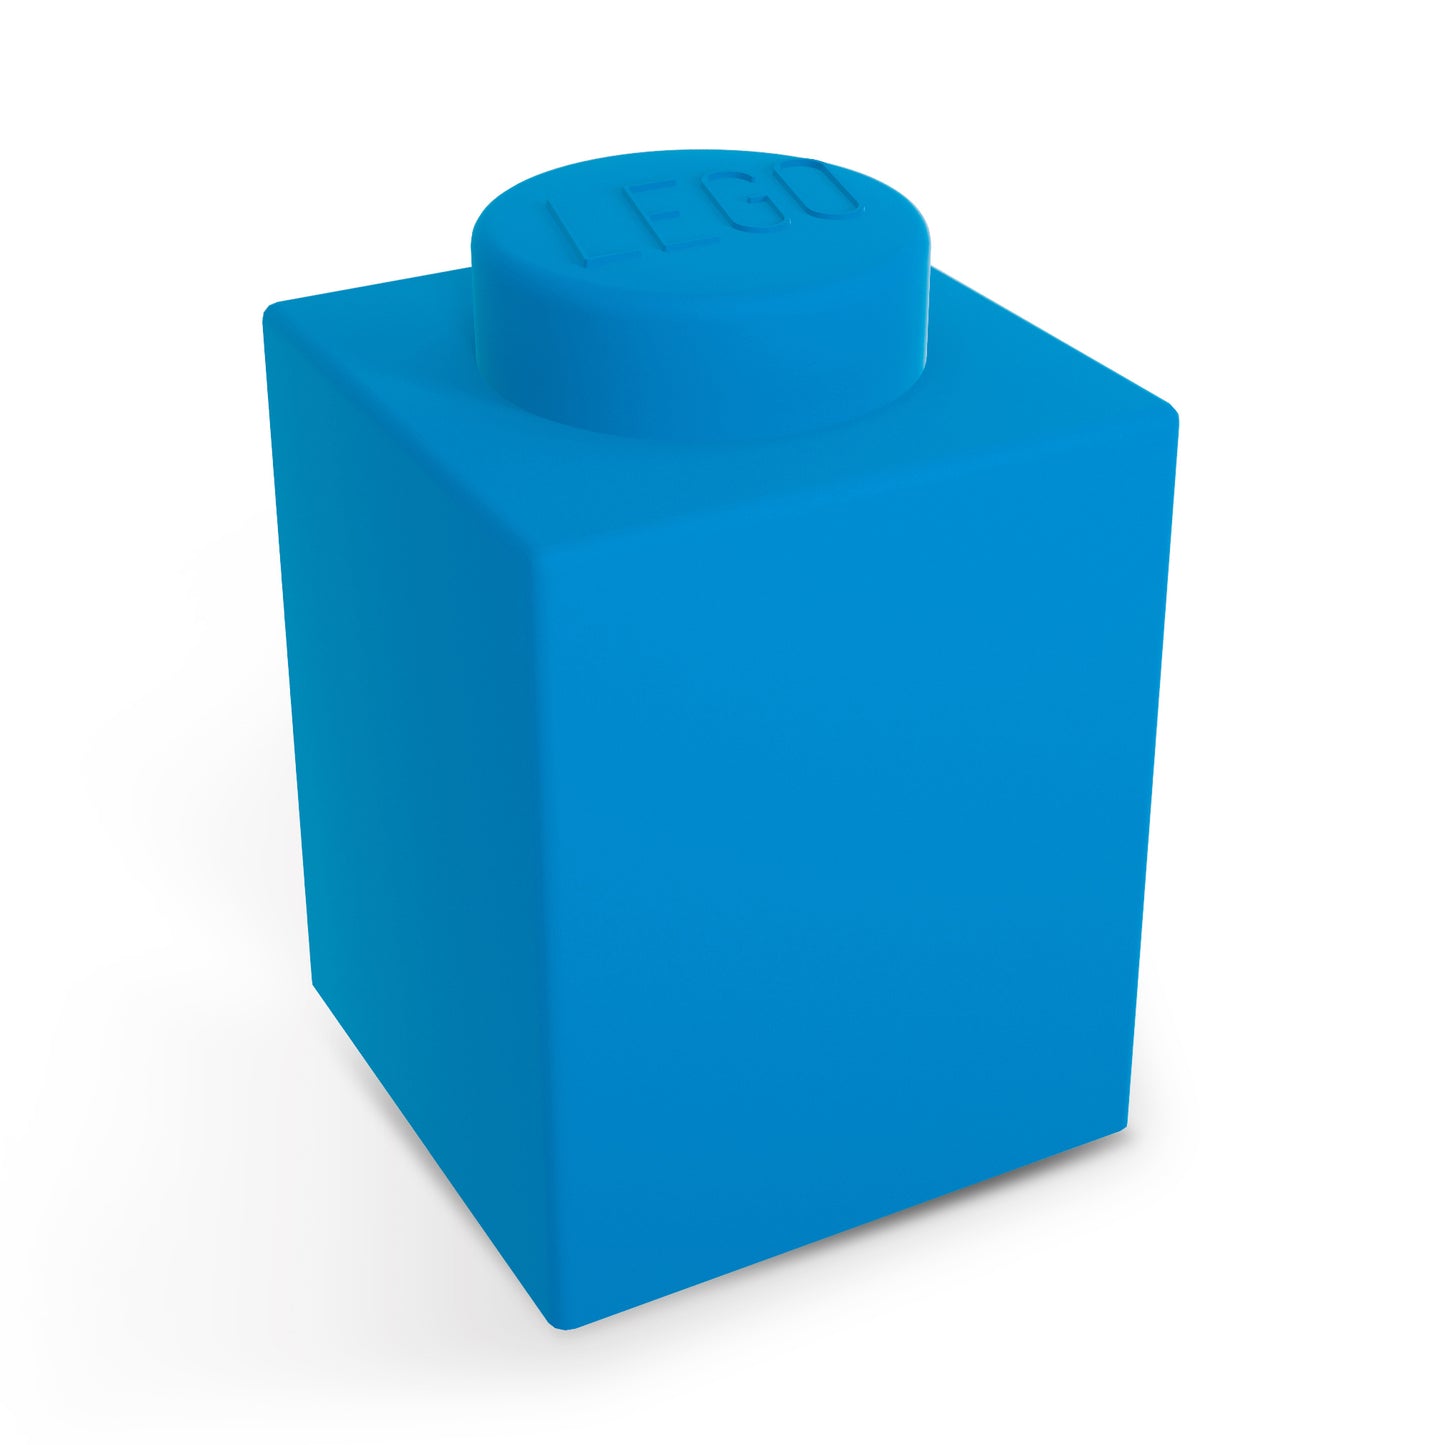 IQ 樂高 積木造型軟矽膠觸控變色燈 藍色 (LP37)